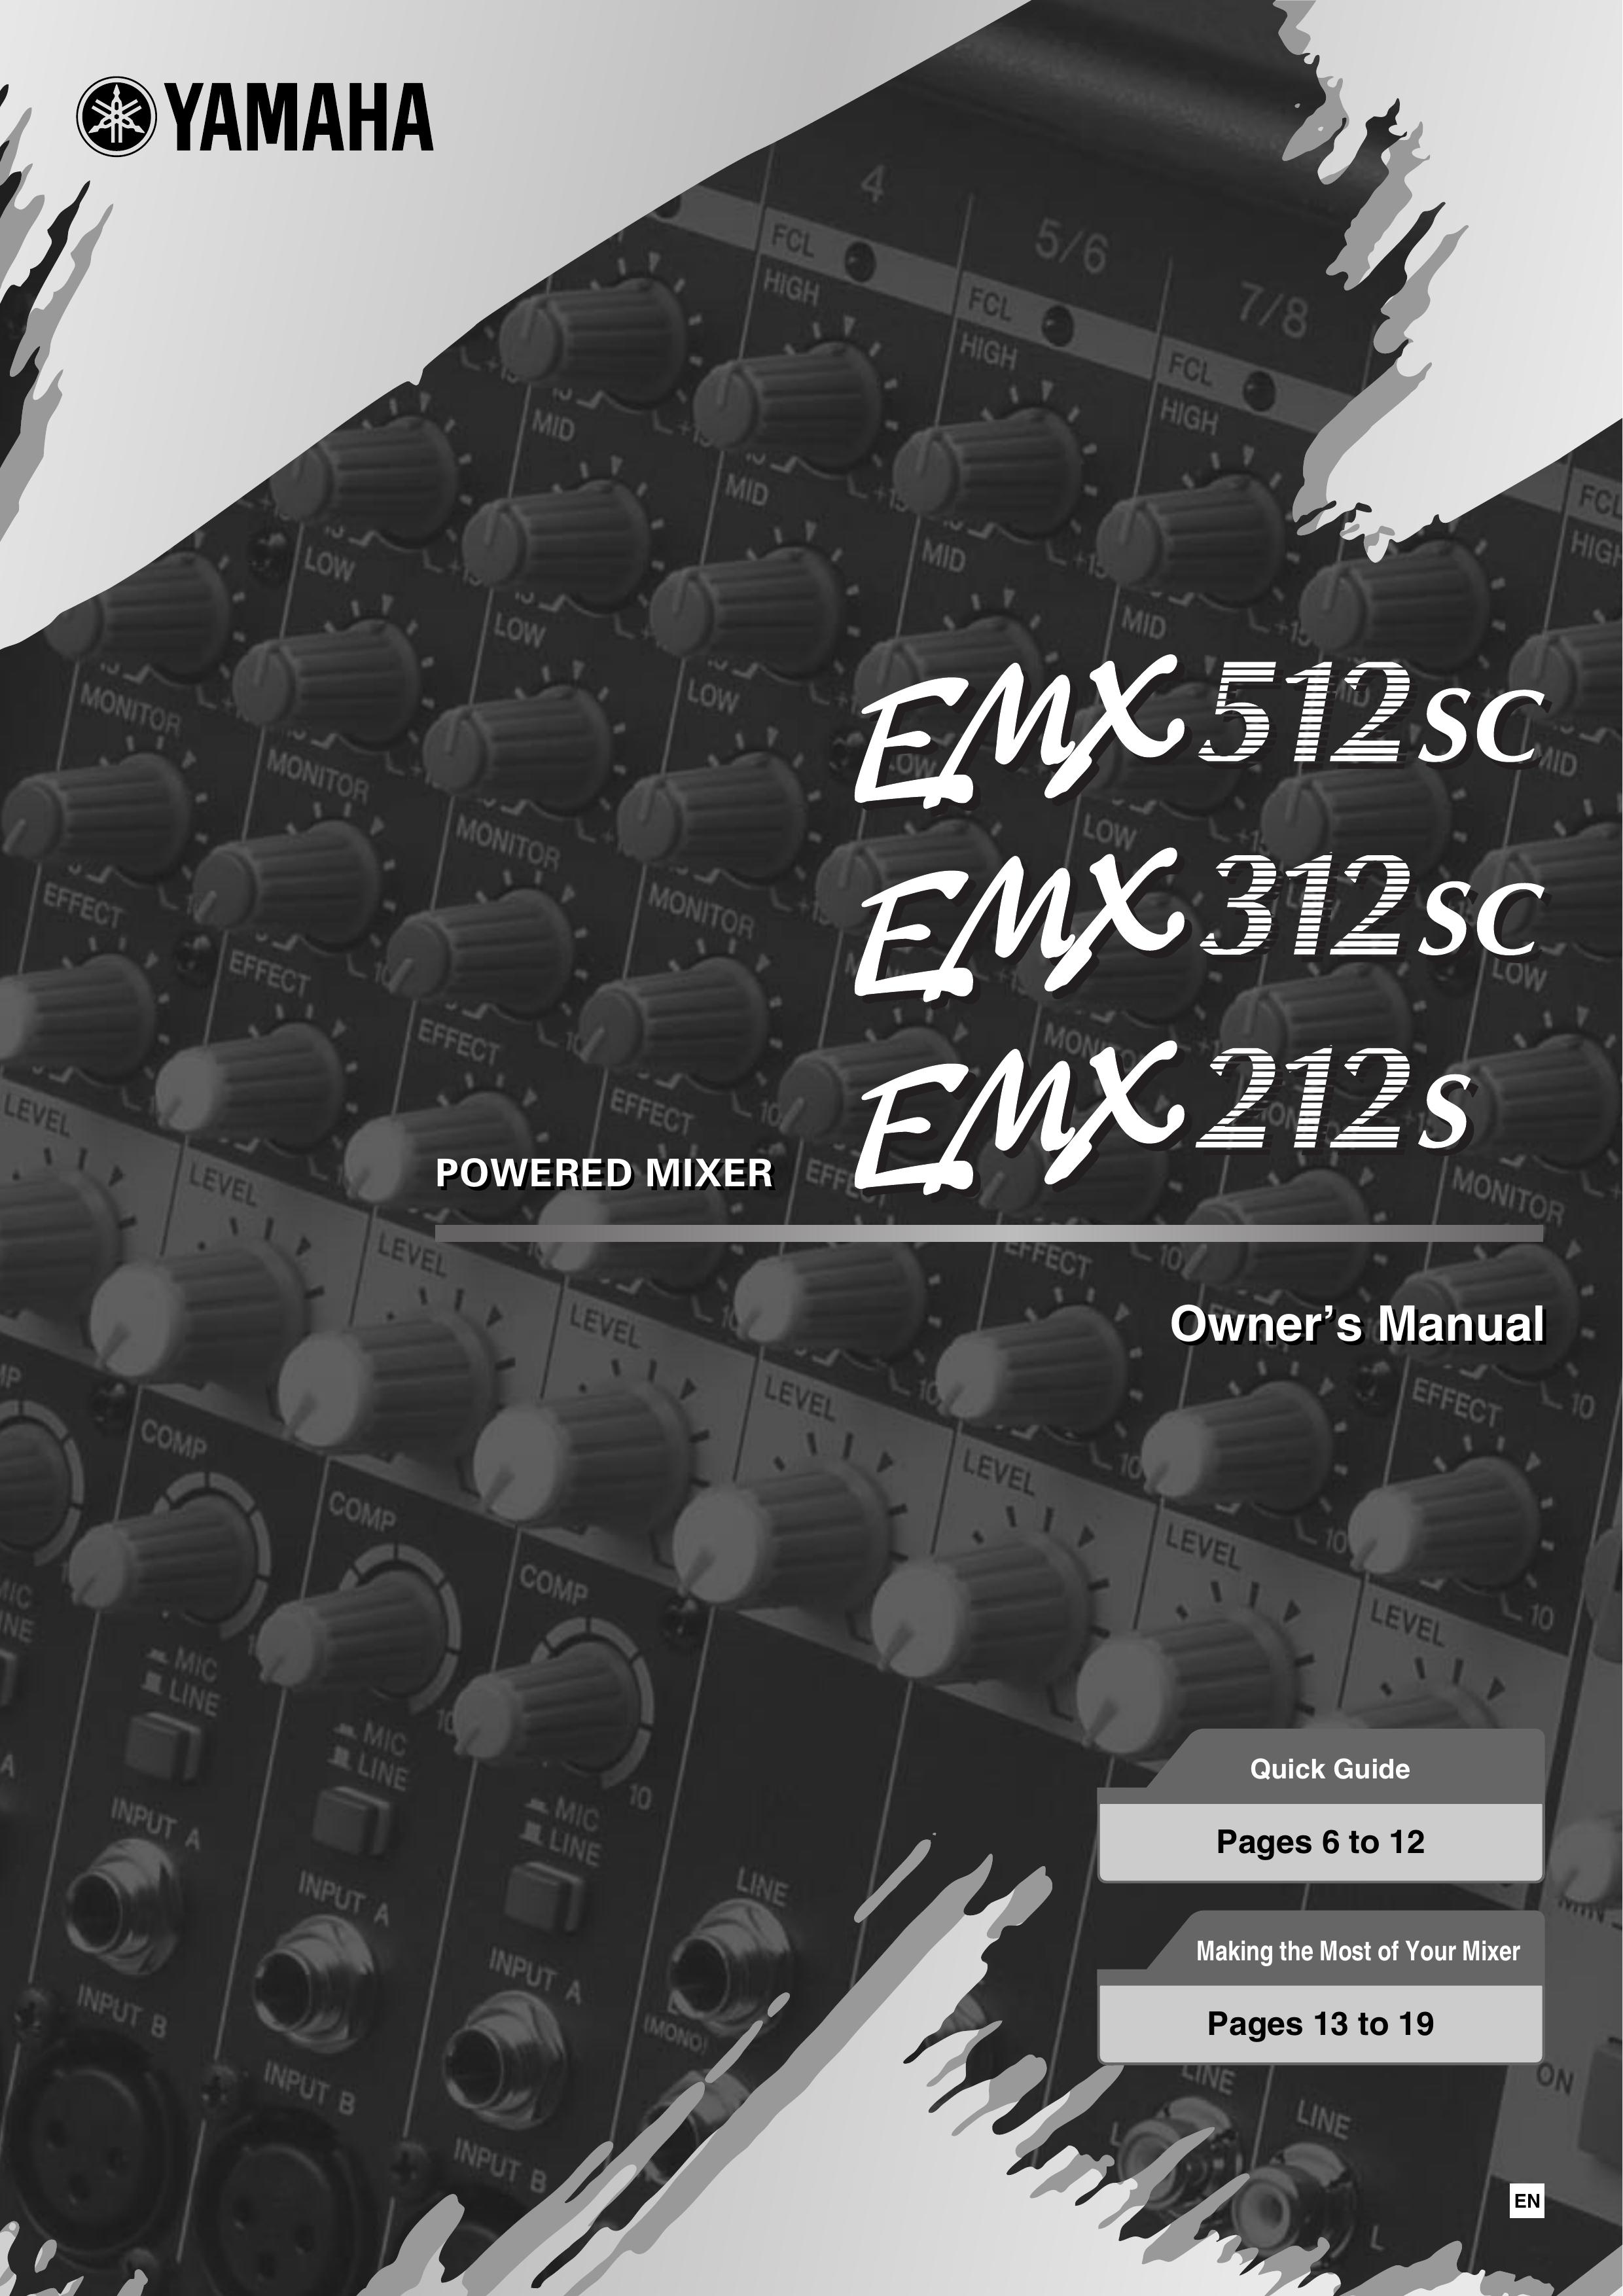 Yamaha EMX312SC Music Mixer User Manual